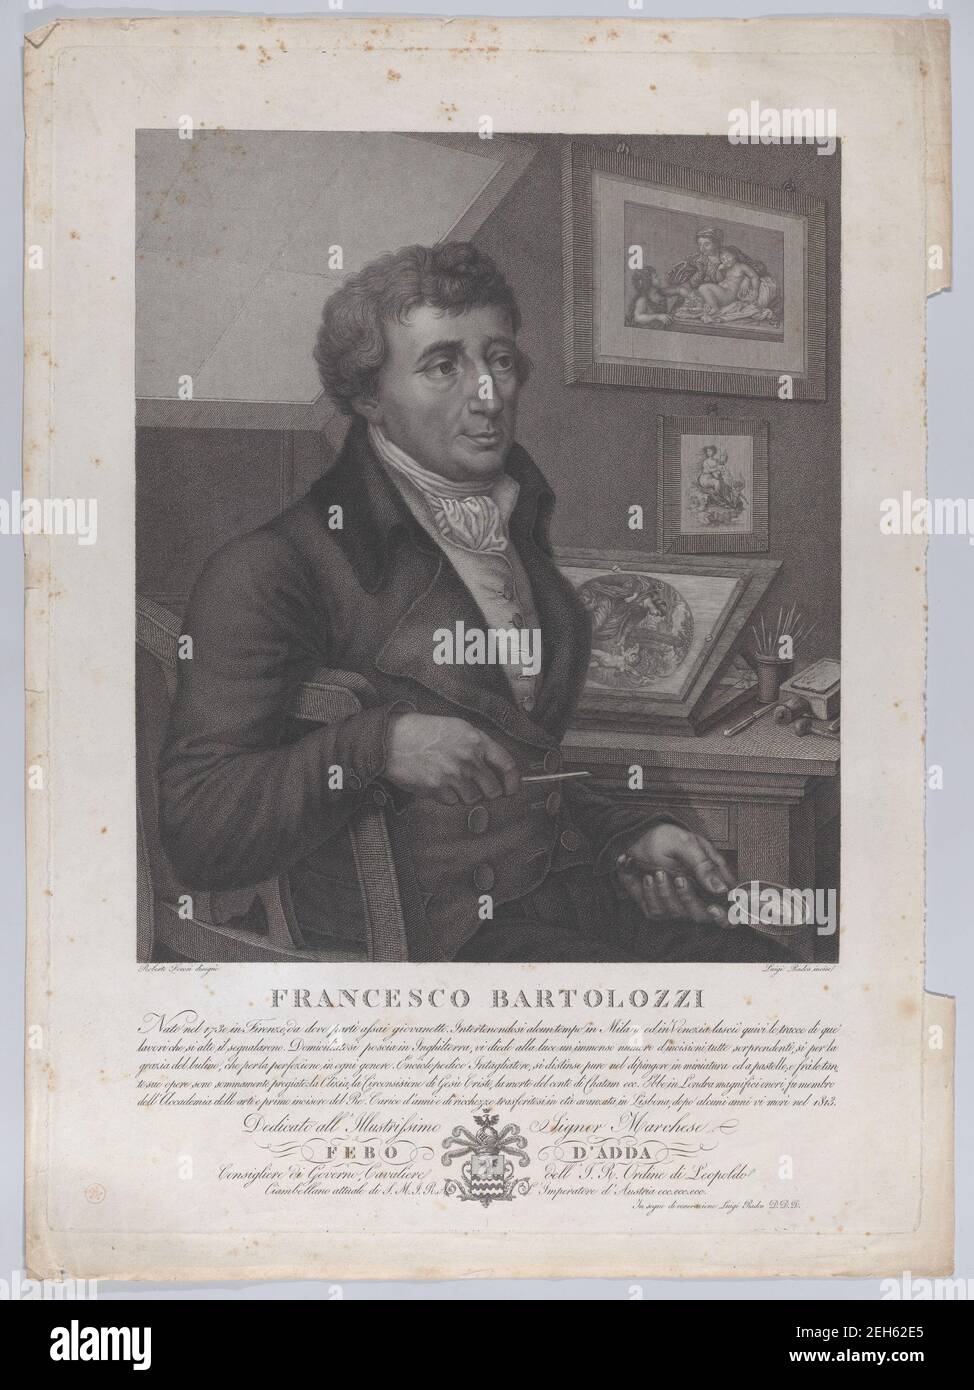 Porträt von Francesco Bartolozzi, sitzend, mit einer Lupe mit Druckwerkzeugen und einer Platte auf dem Schreibtisch hinter ihm, 1827. Stockfoto